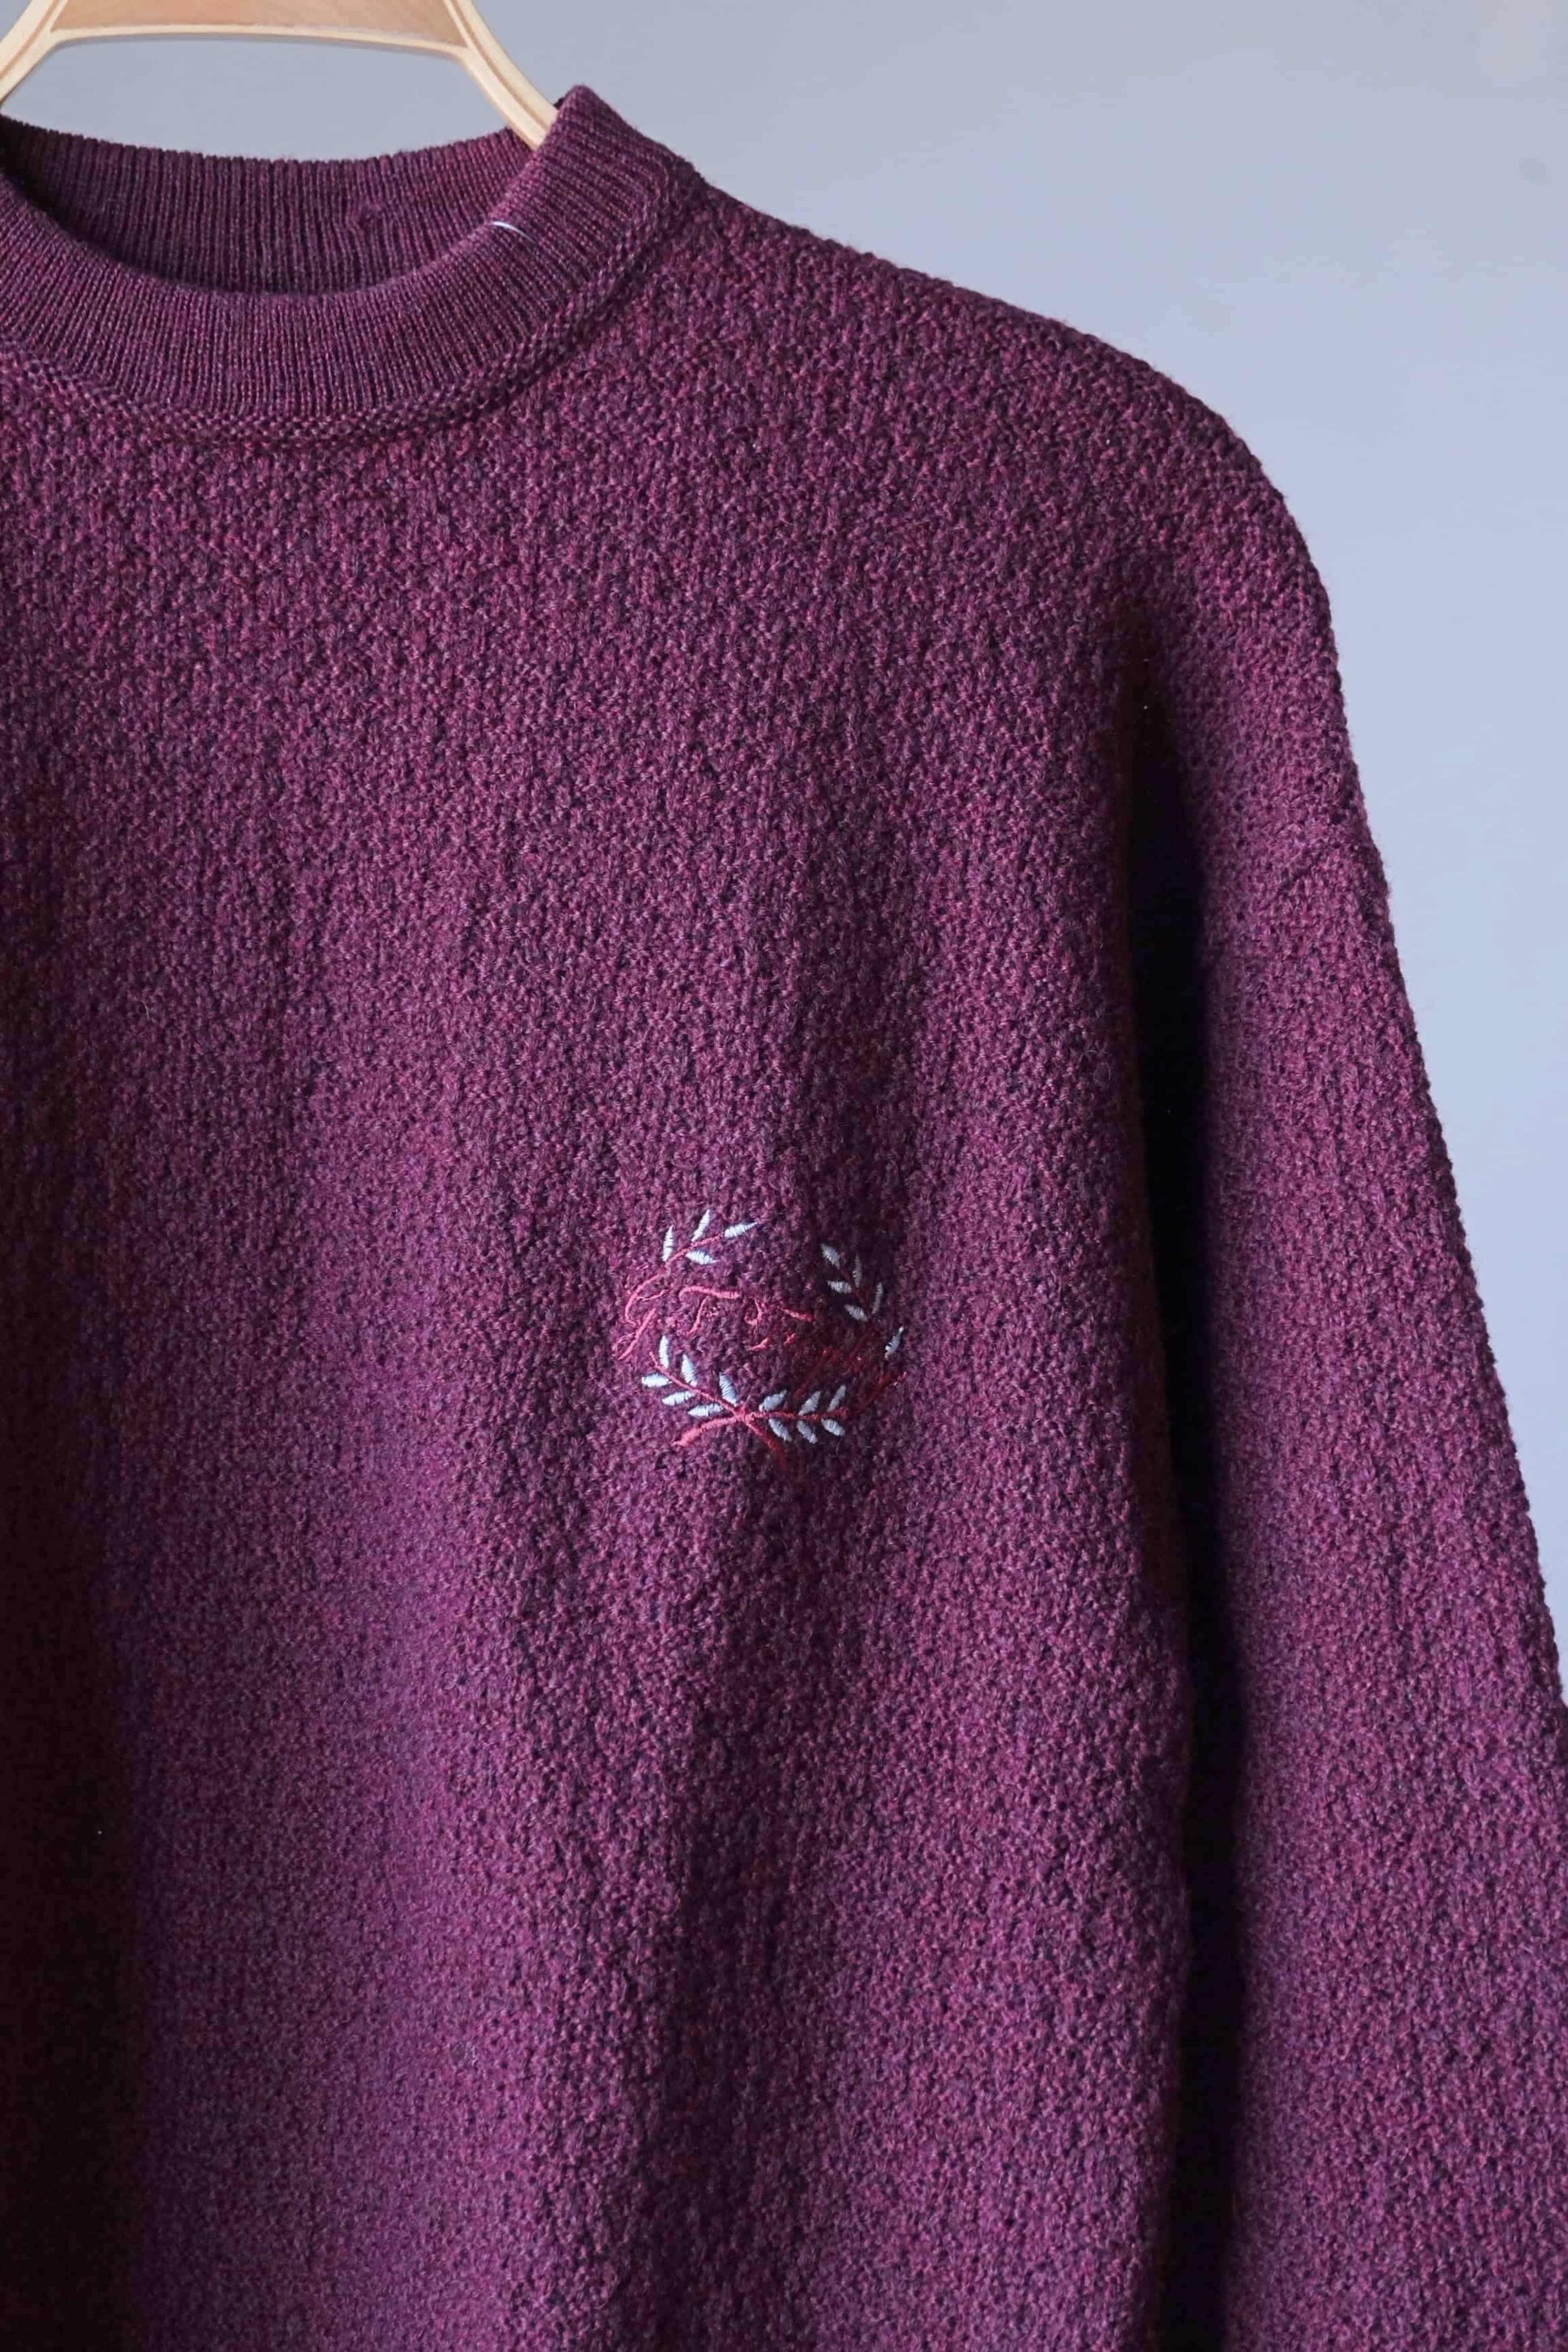 Vintage 90's Burgundy Sweater details